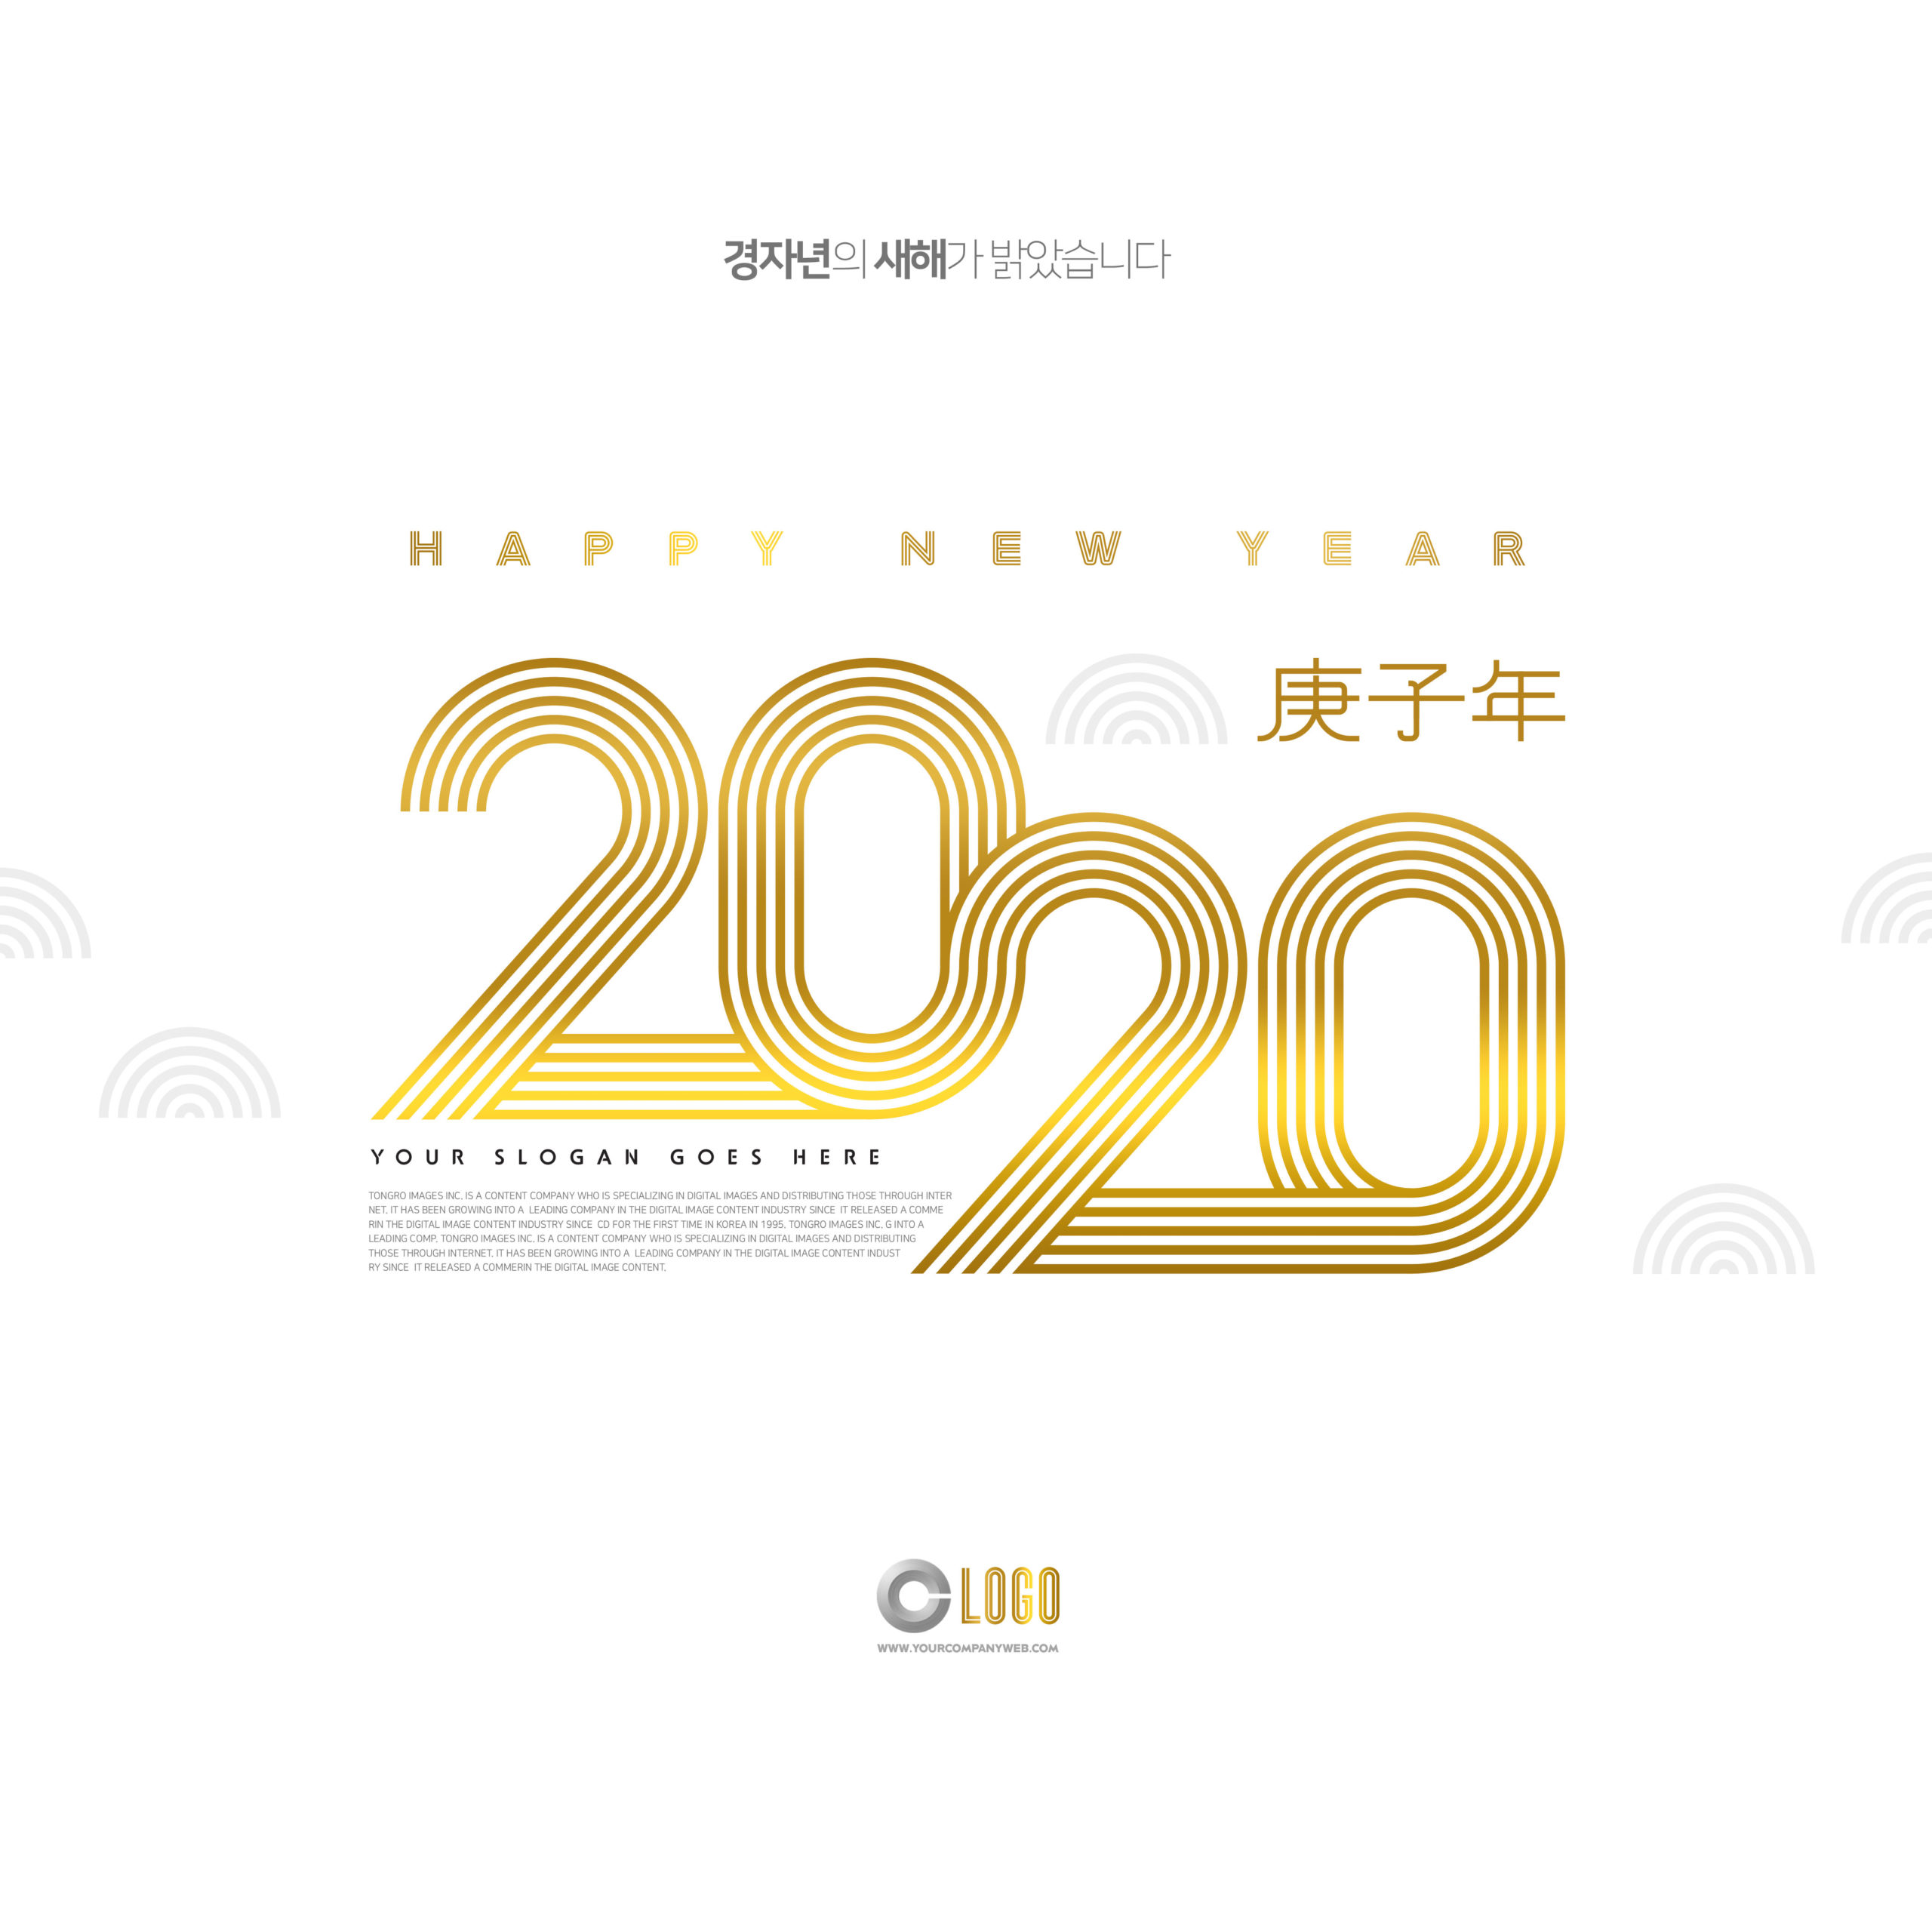 金色条纹2020庚子年字体新年主题海报设计素材插图